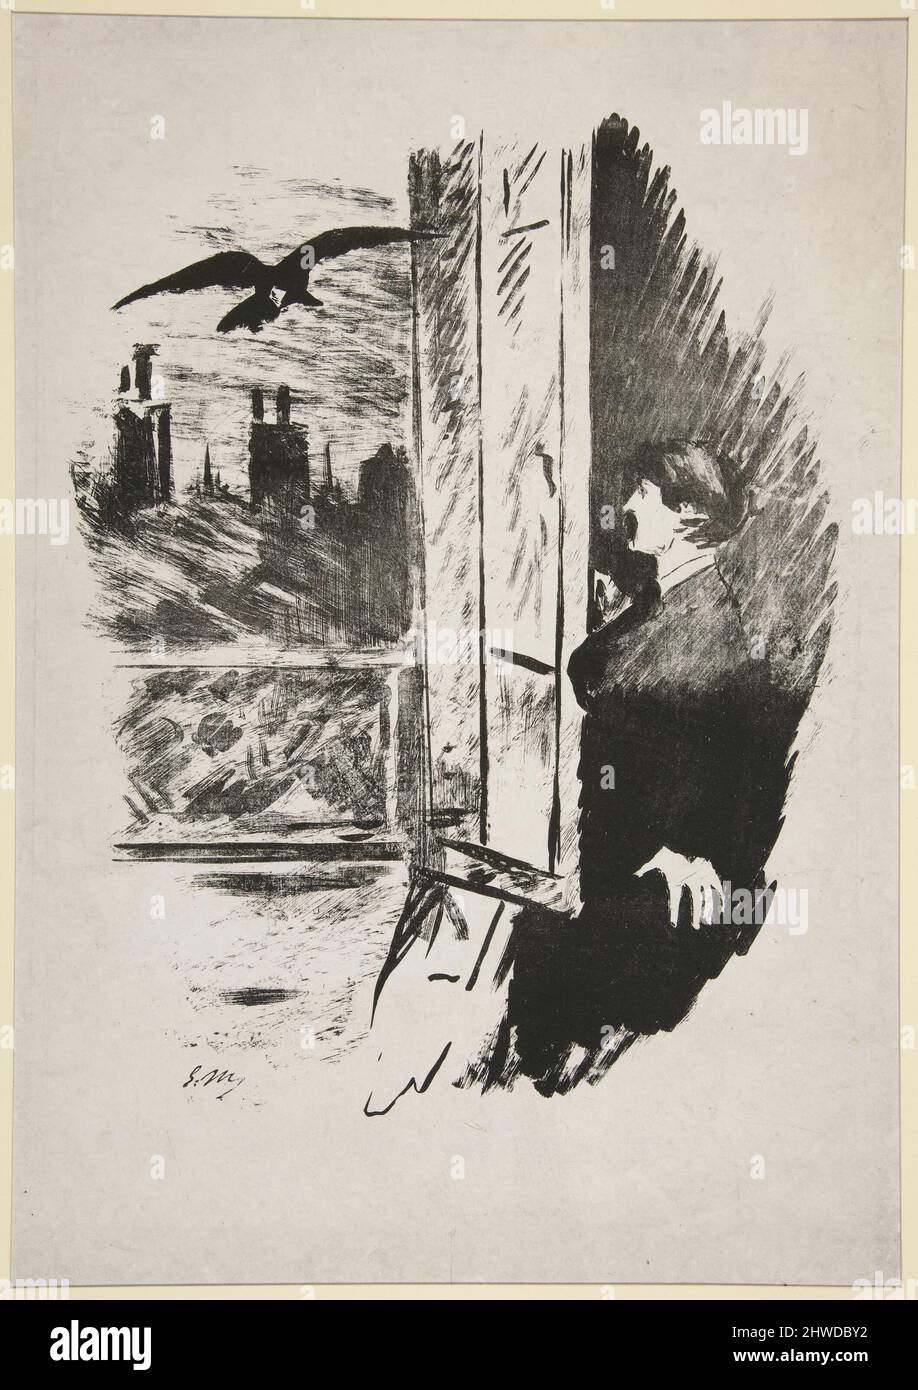 Alla finestra, seconda illustrazione della traduzione di Mallarmé del “The Raven” di PoE. Artista: Édouard Manet, francese, 1832–1883 Foto Stock